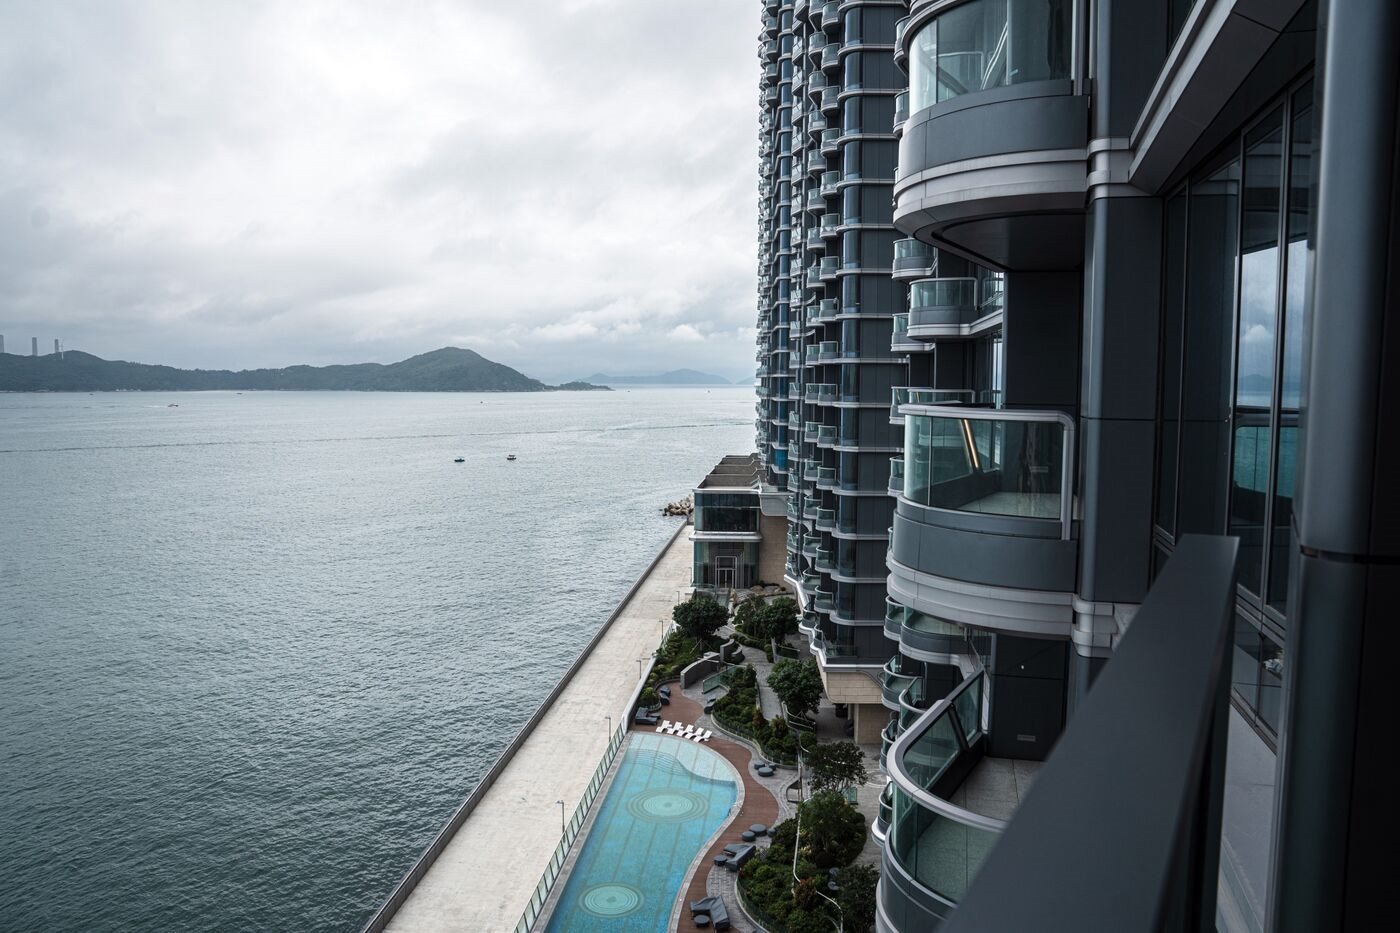 'Toát mồ hôi' với khu chung cư giá 1,6 tỷ đồng/m2: Mở bán gần nửa năm chỉ 3 căn có chủ, toà nhà view biển nhưng chìm trong 'sóng nợ' - Ảnh 1.